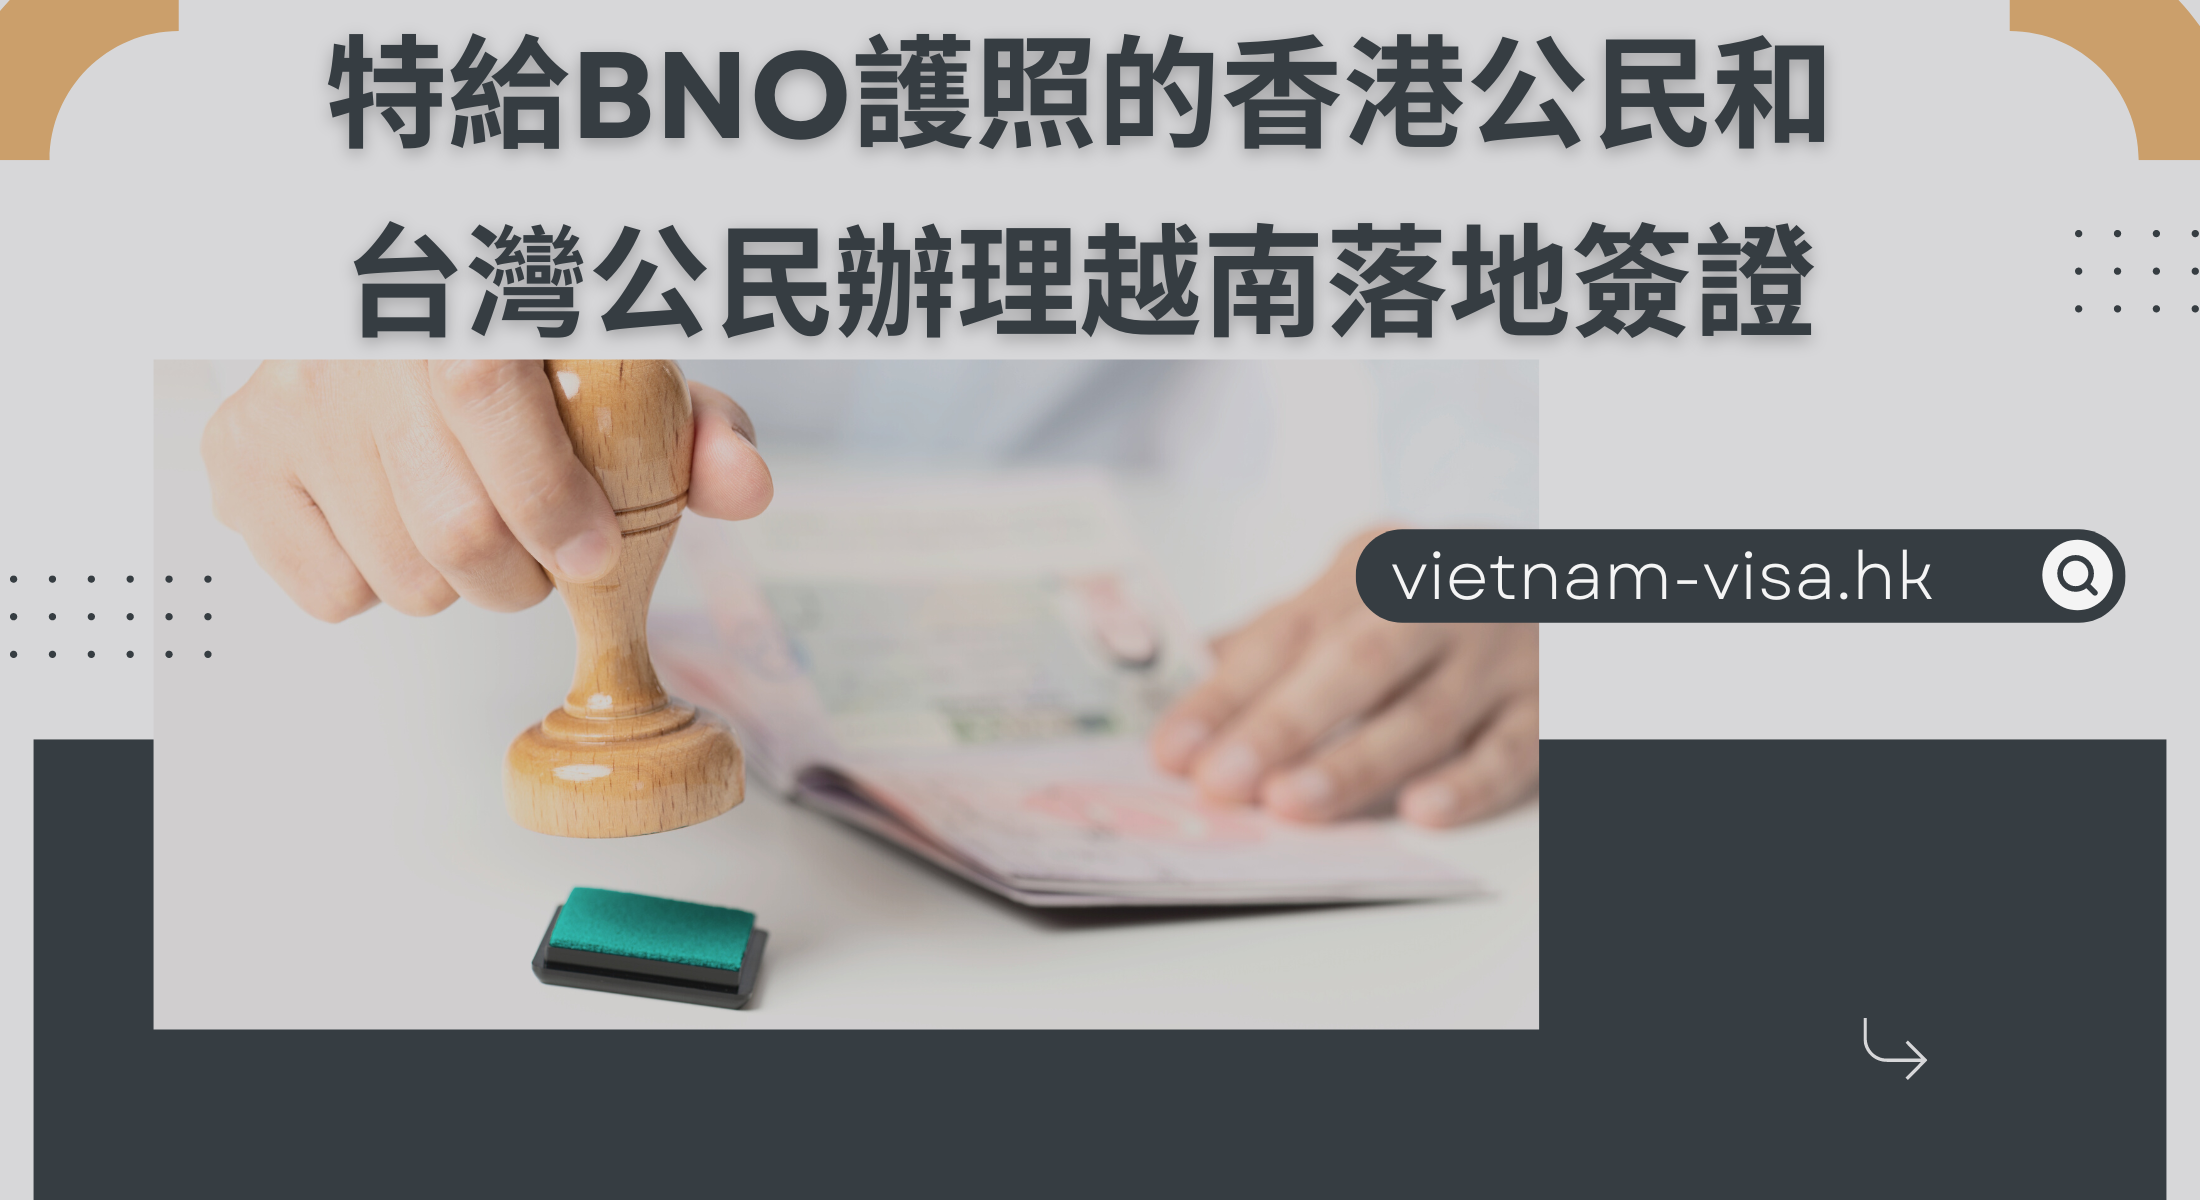 從2022年11月特給BNO護照的香港公民和台灣公民恢復辦理越南落地簽證